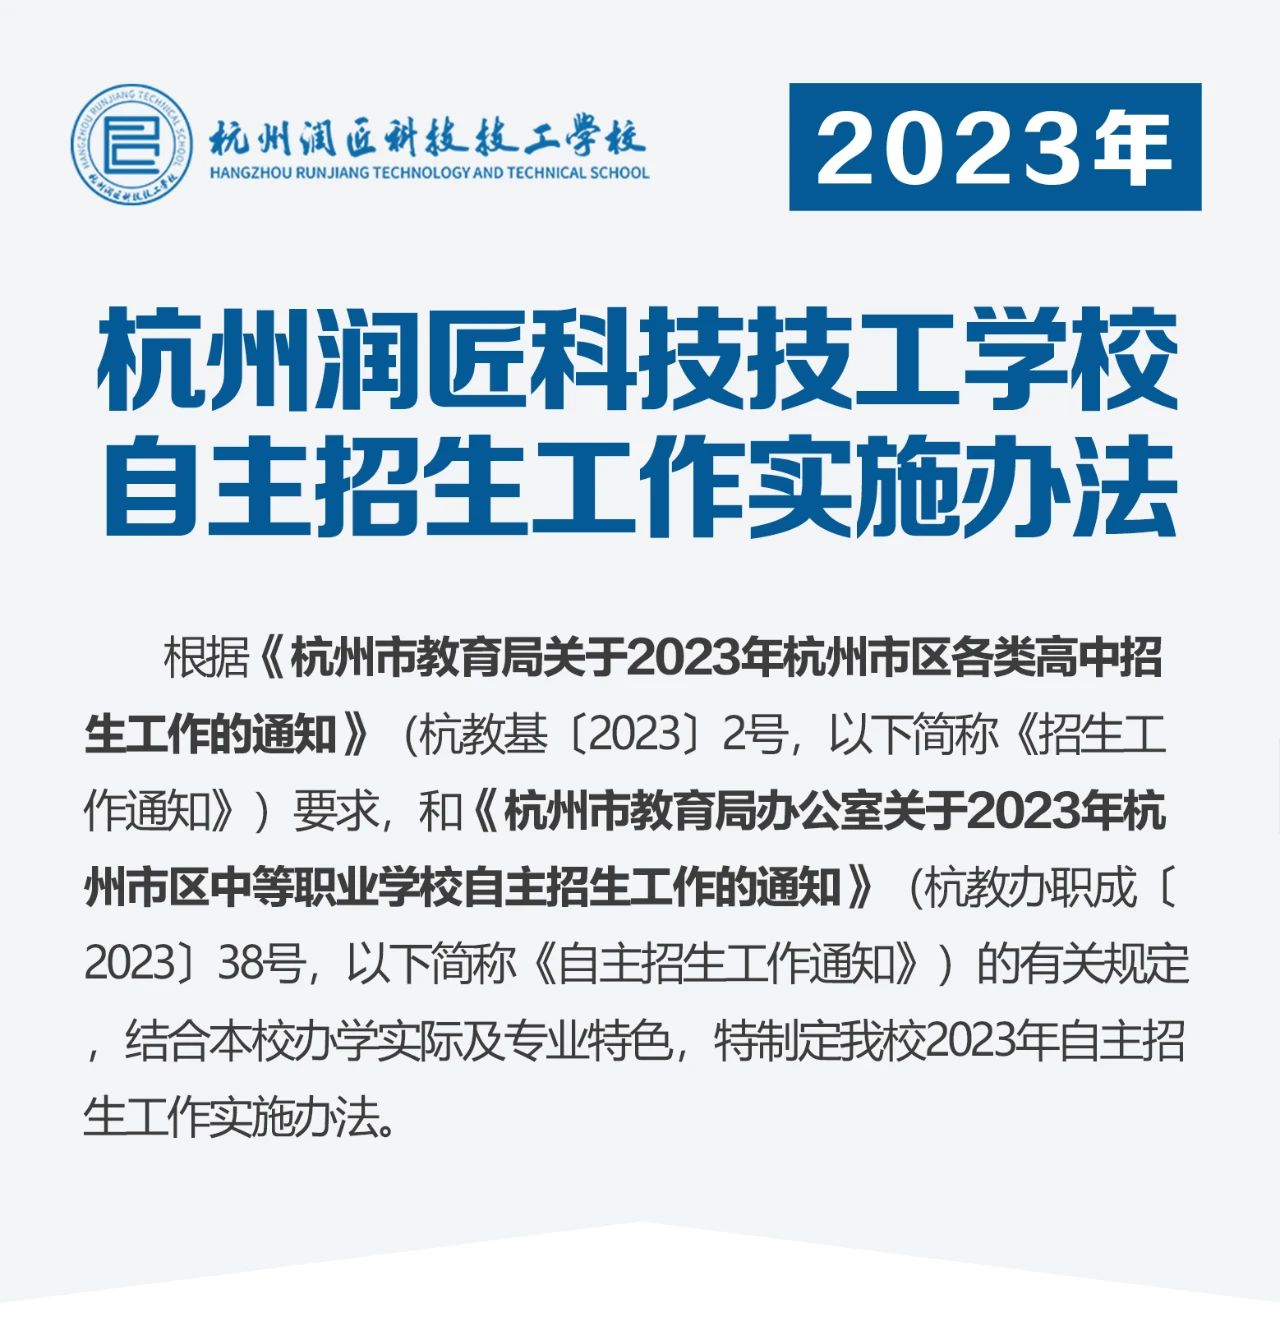 杭州润匠科技技工学校2023年自主招生工作实施办法